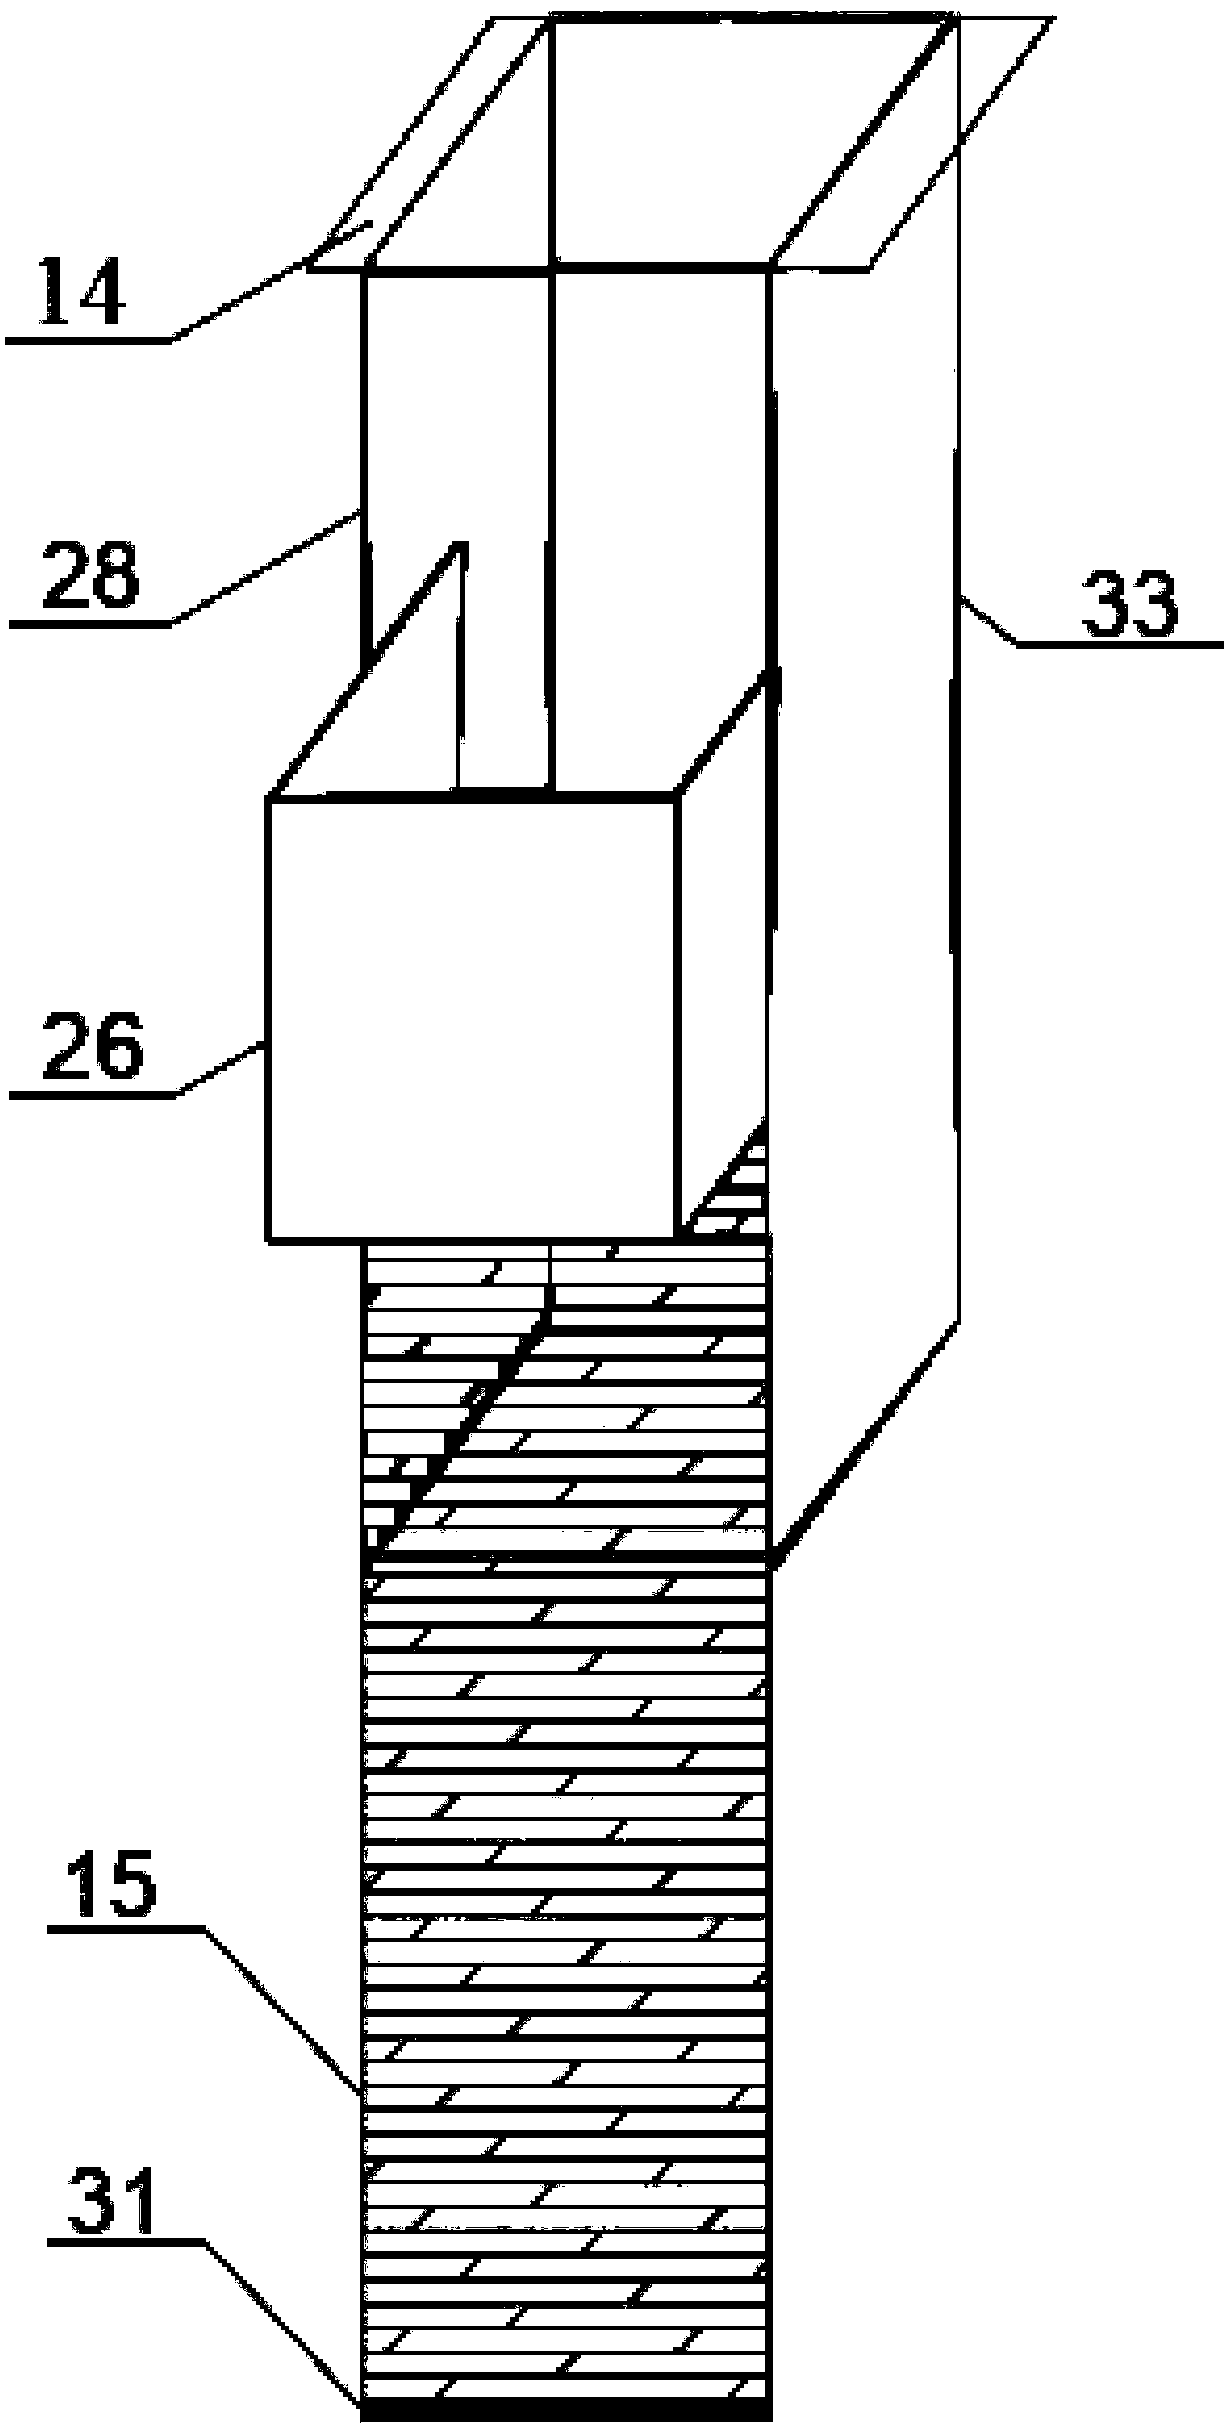 Stratified sampling device for columnar sediment